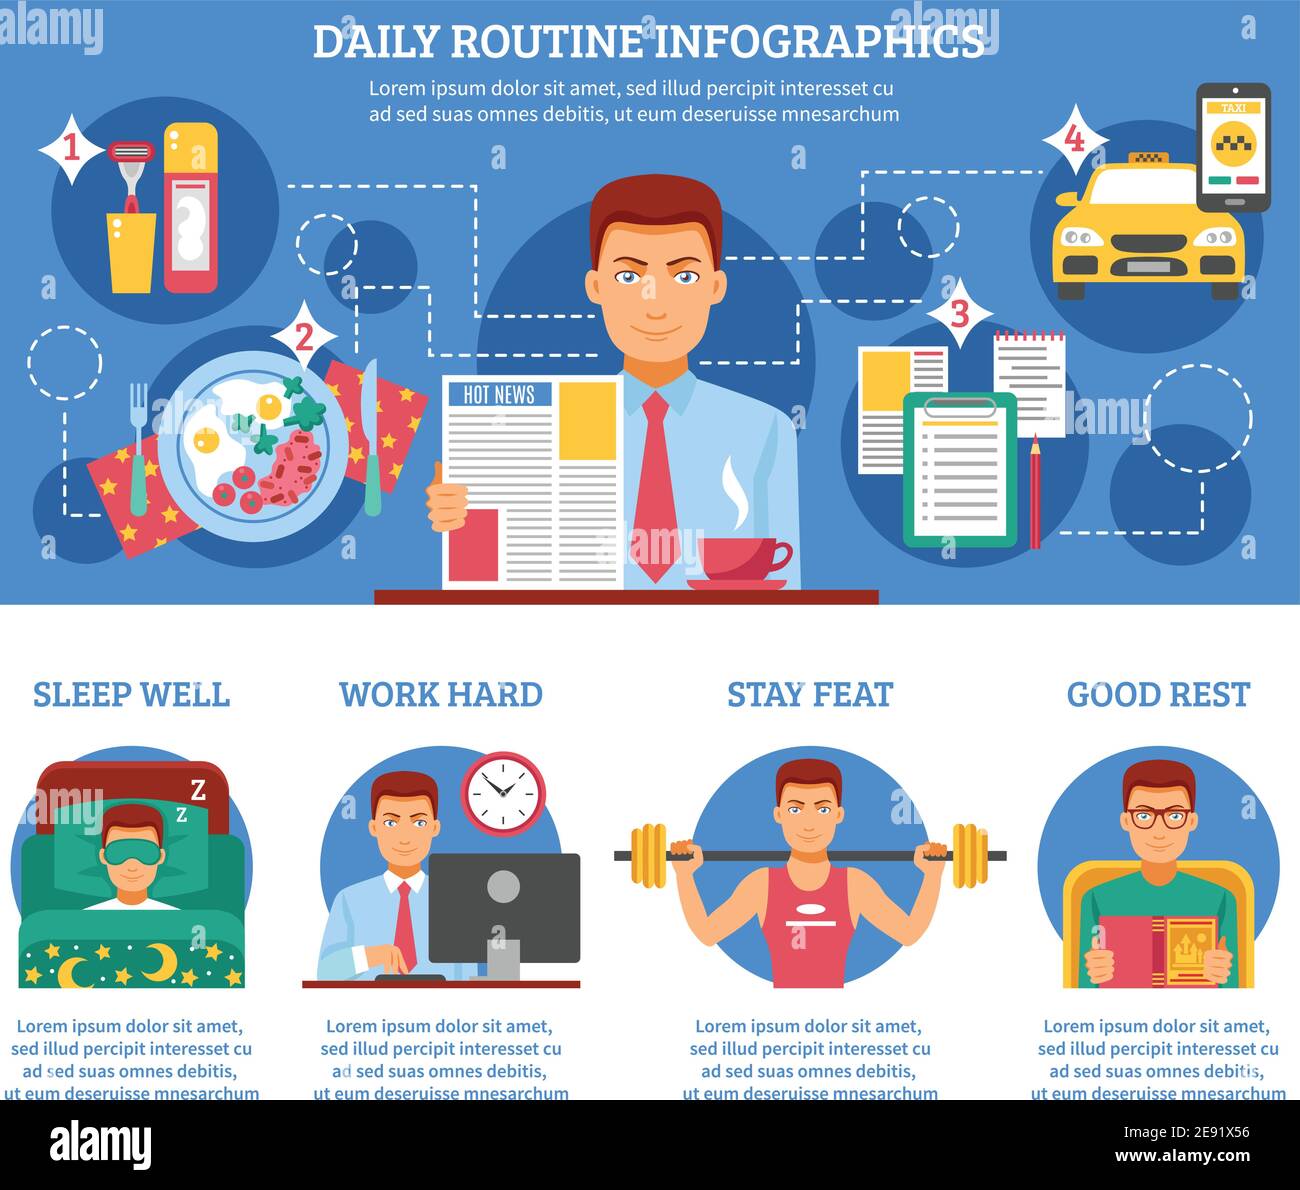 Der Mensch tägliche Routine Infografiken mit Beschreibungen der Schlaf Wand Arbeit Hard Stay feat und Good Rest Vektor Illustration Stock Vektor